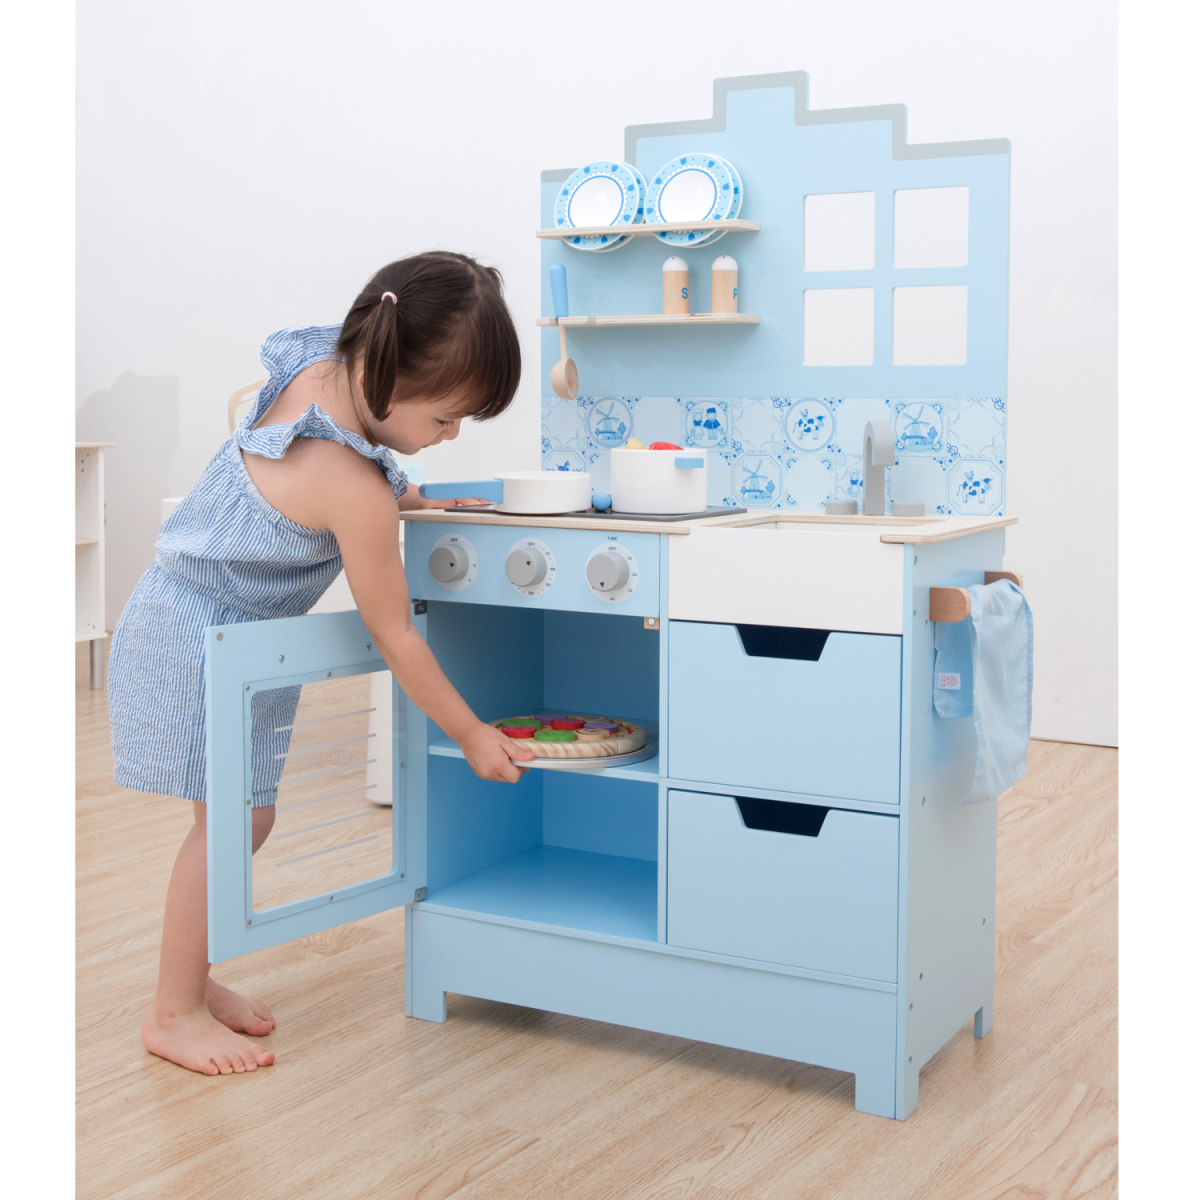 Игровой набор New Classic Toys Кухня Delft, голубой (11069) - фото 5